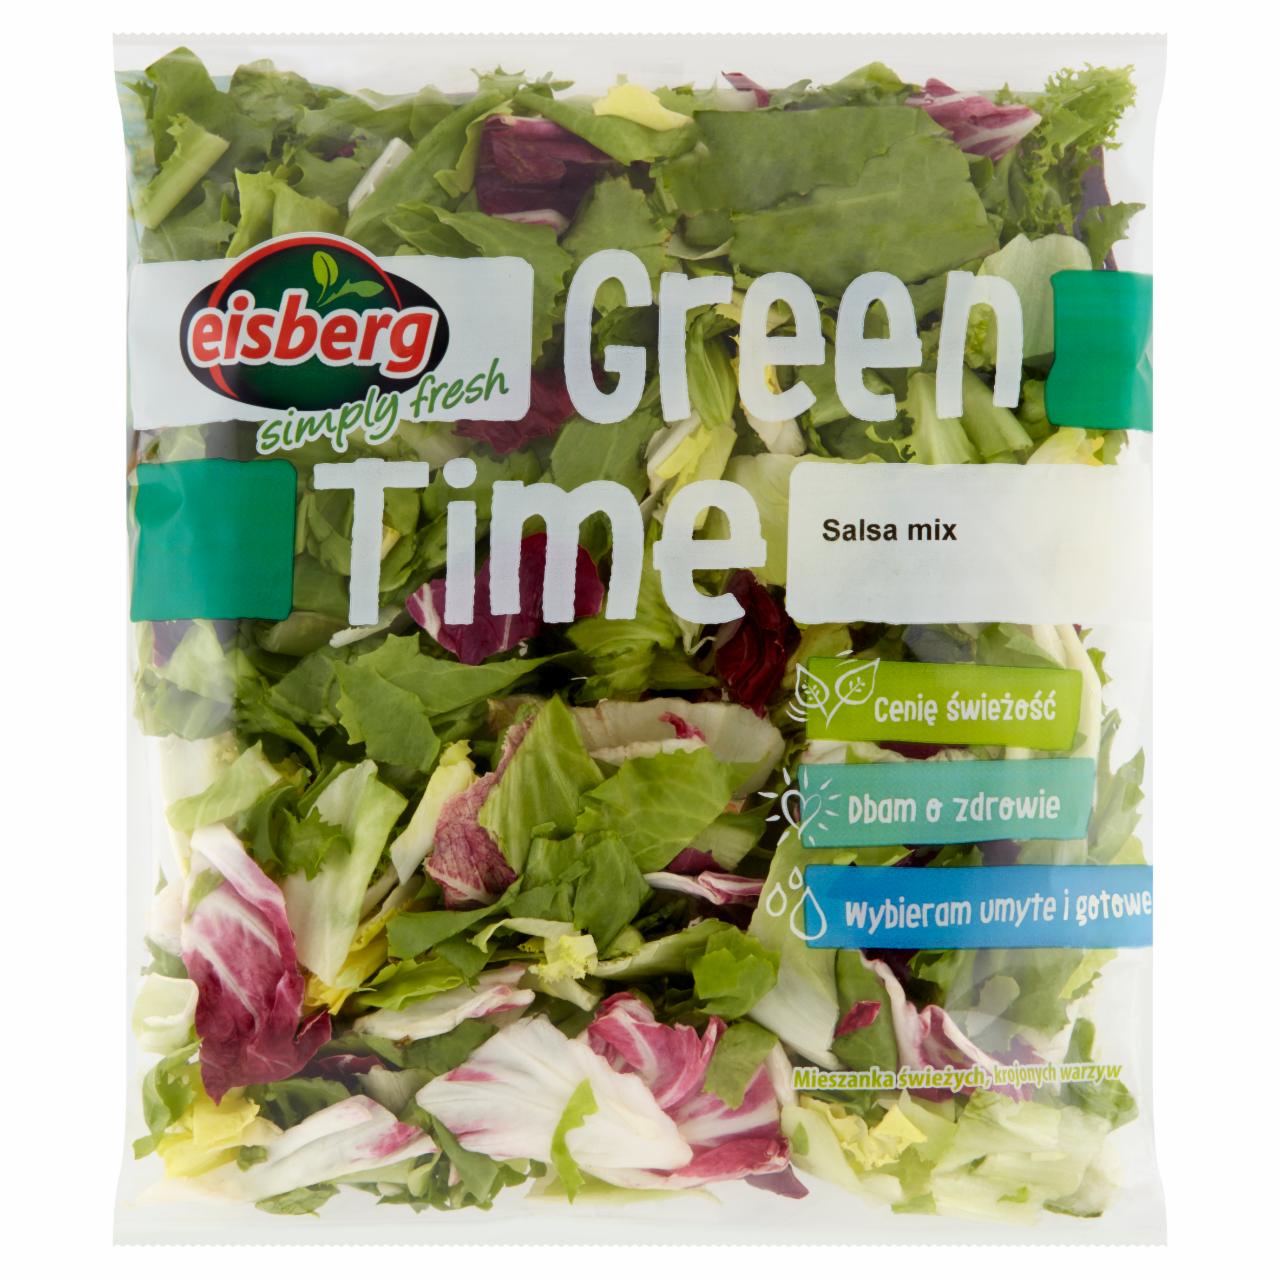 Zdjęcia - Eisberg Green Time Salsa mix Mieszanka świeżych krojonych warzyw 180 g